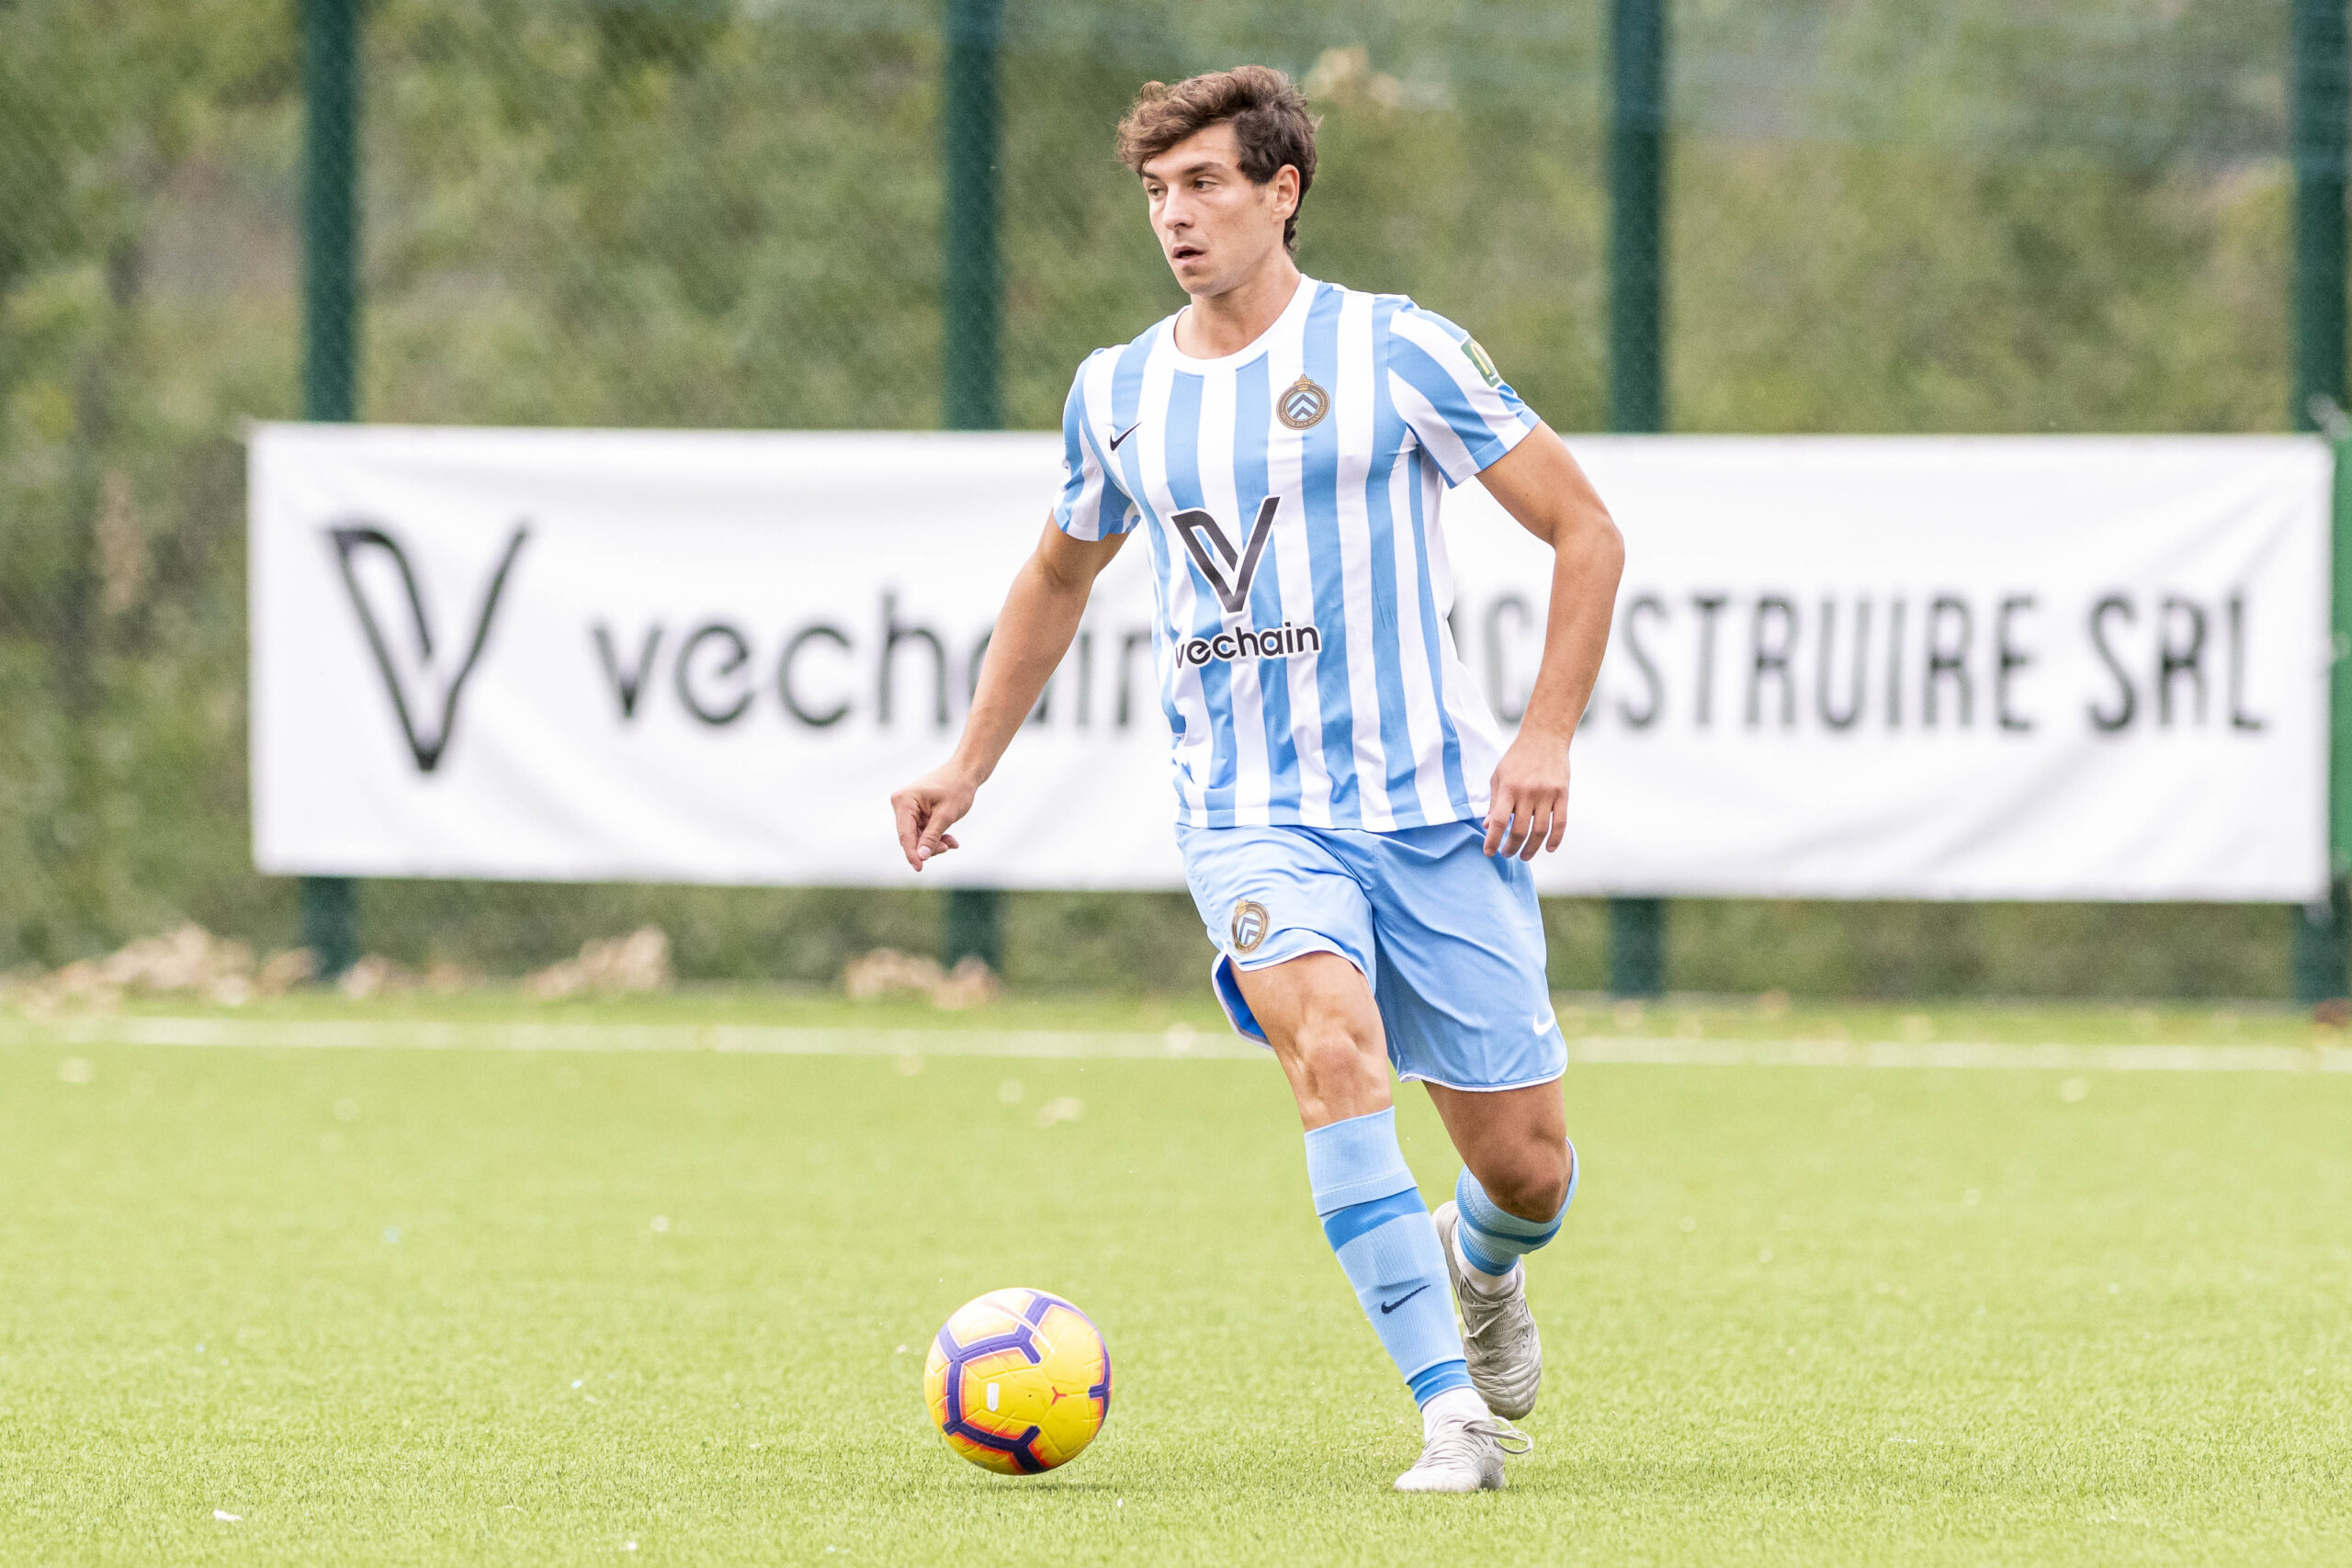 Calcio, Alessandro Monaco conquistato dal suo Victor San Marino capolista in Eccellenza: “C’è voglia di crescere, migliorarsi e guardare lontano”